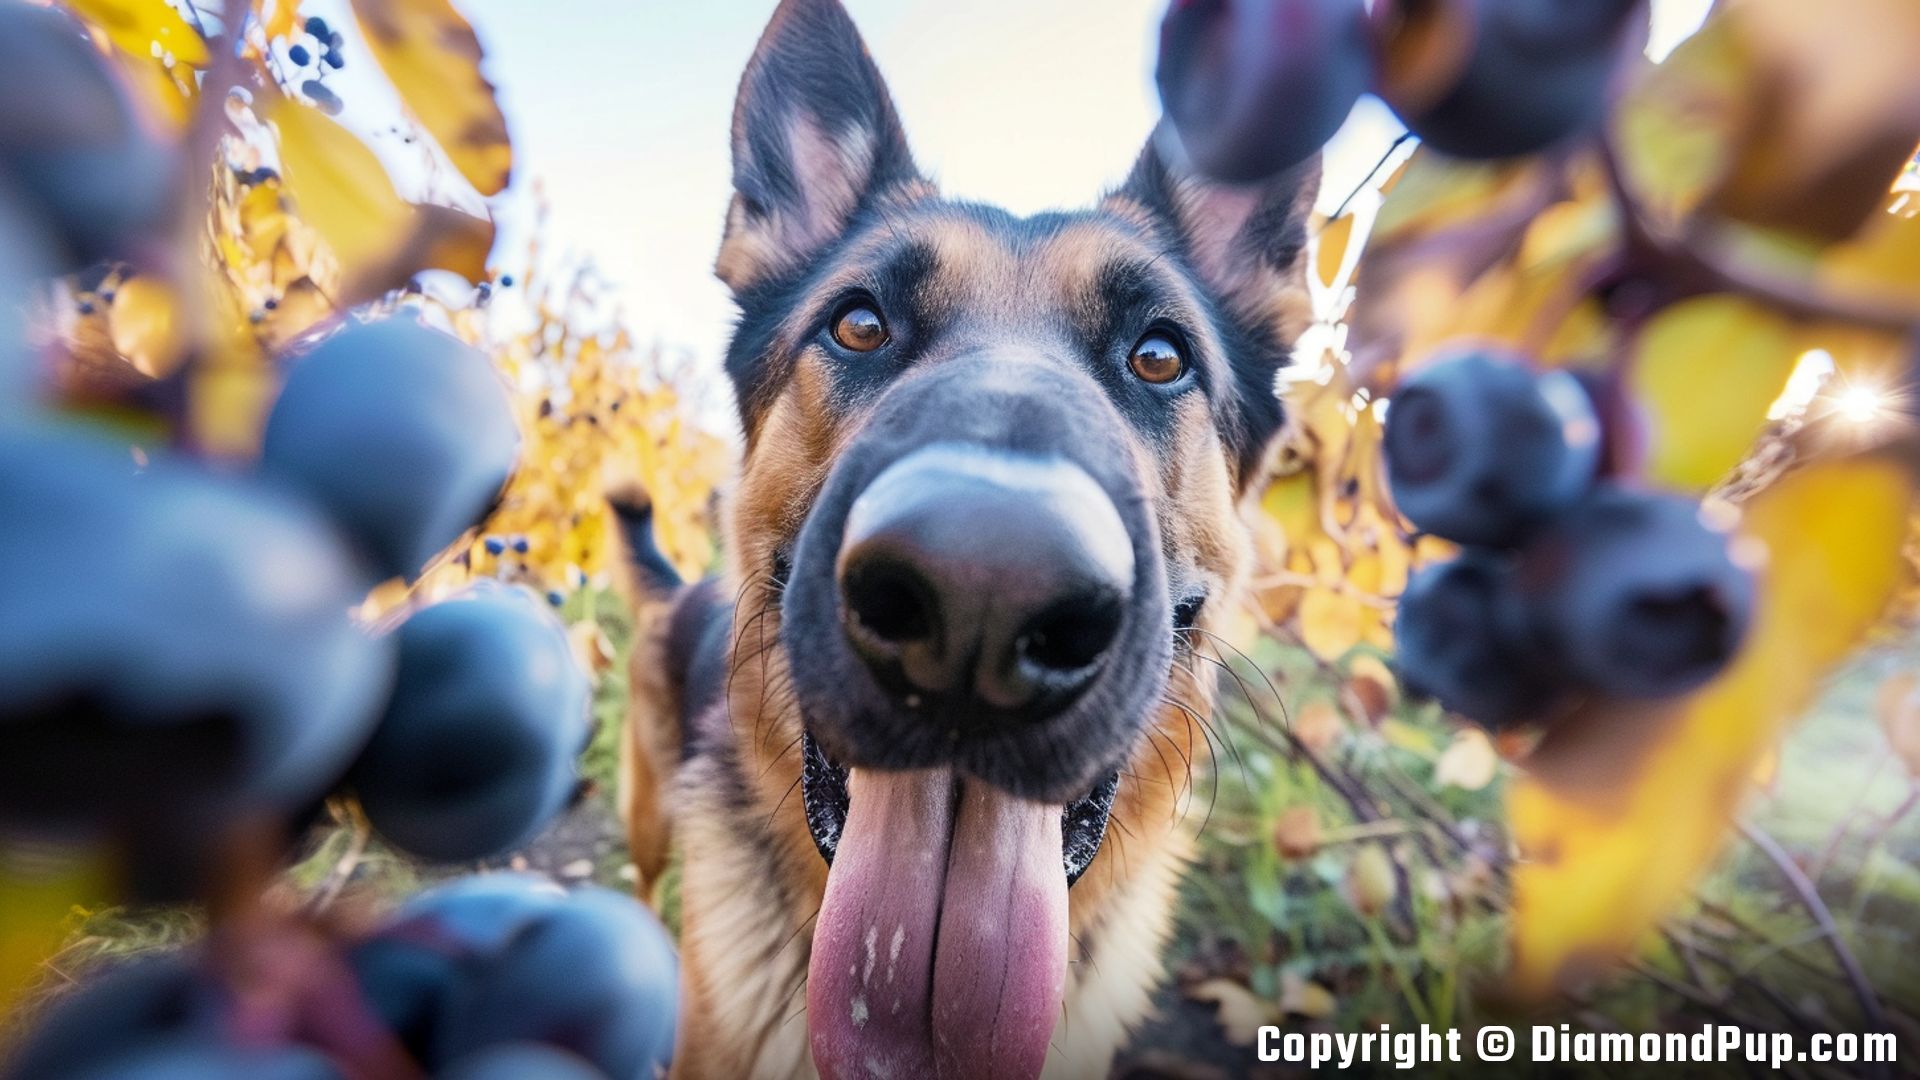 Image of a Cute German Shepherd Eating Blueberries